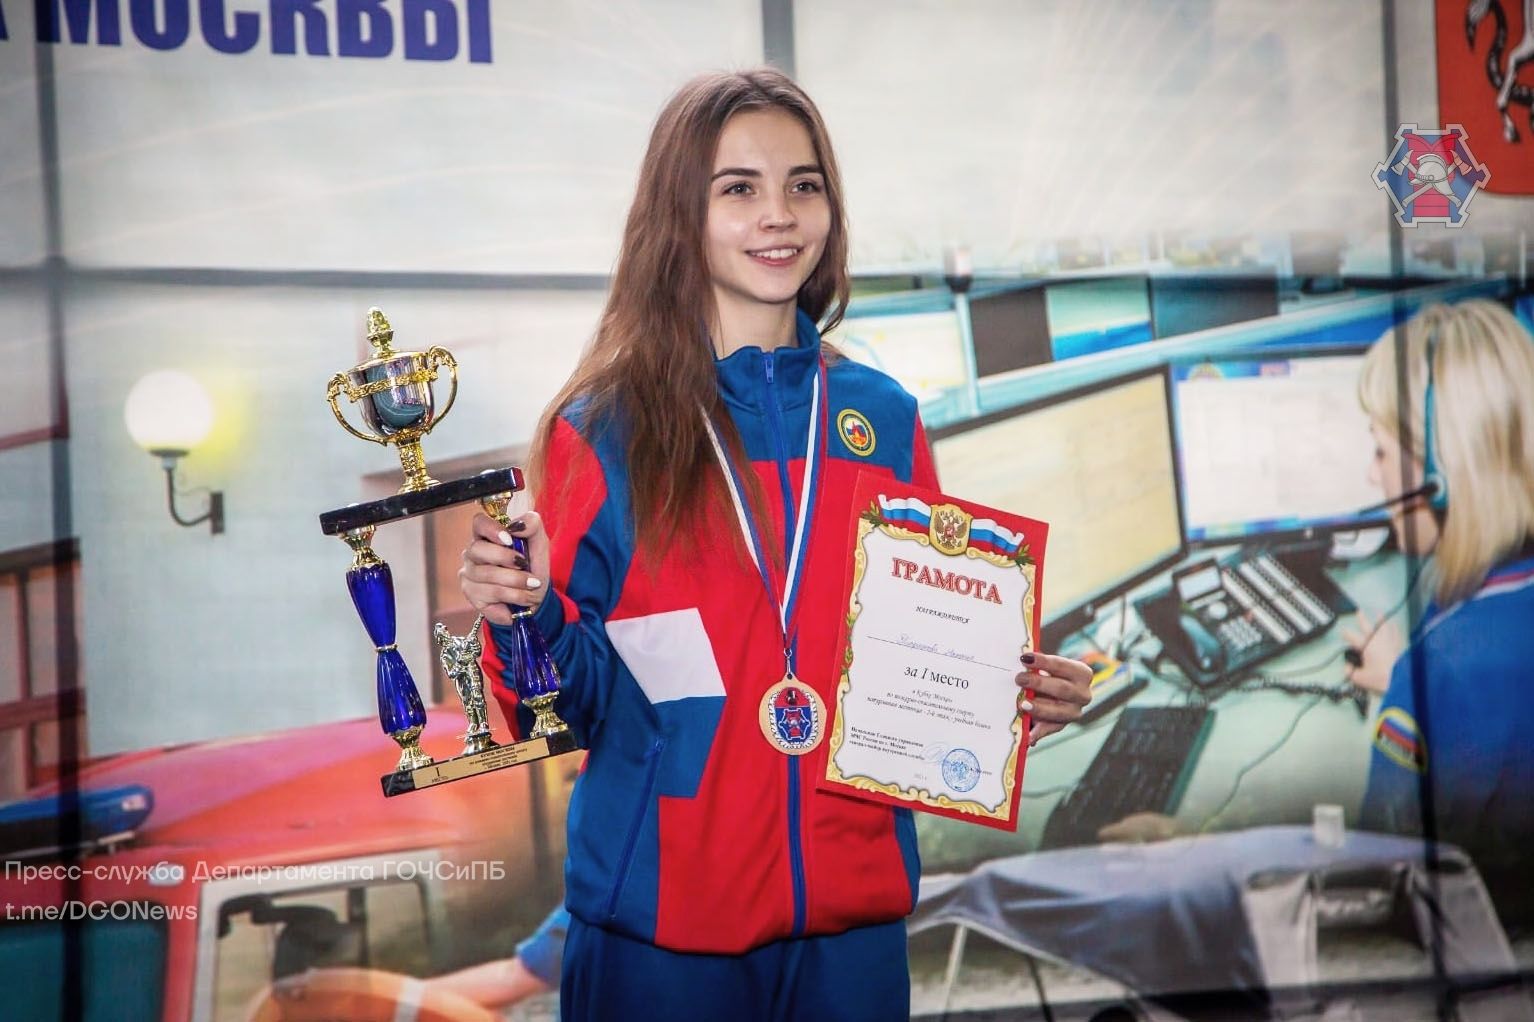 Оператор Службы 112 Москвы Наталия Тюрникова заняла 1 место на Чемпионате Москвы по пожарно-спасательному спорту